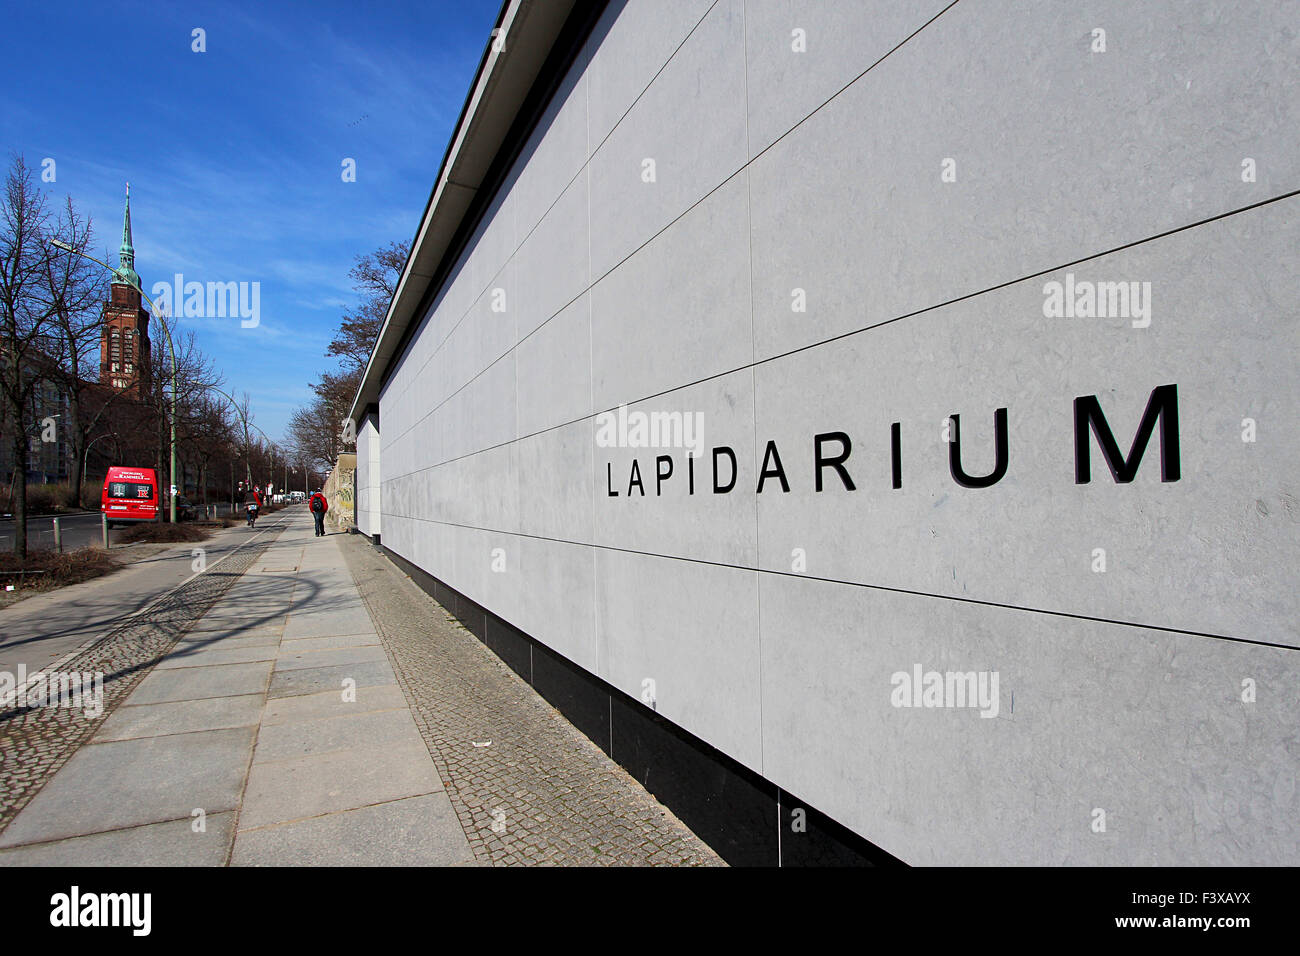 lapidarium in berlin Stock Photo